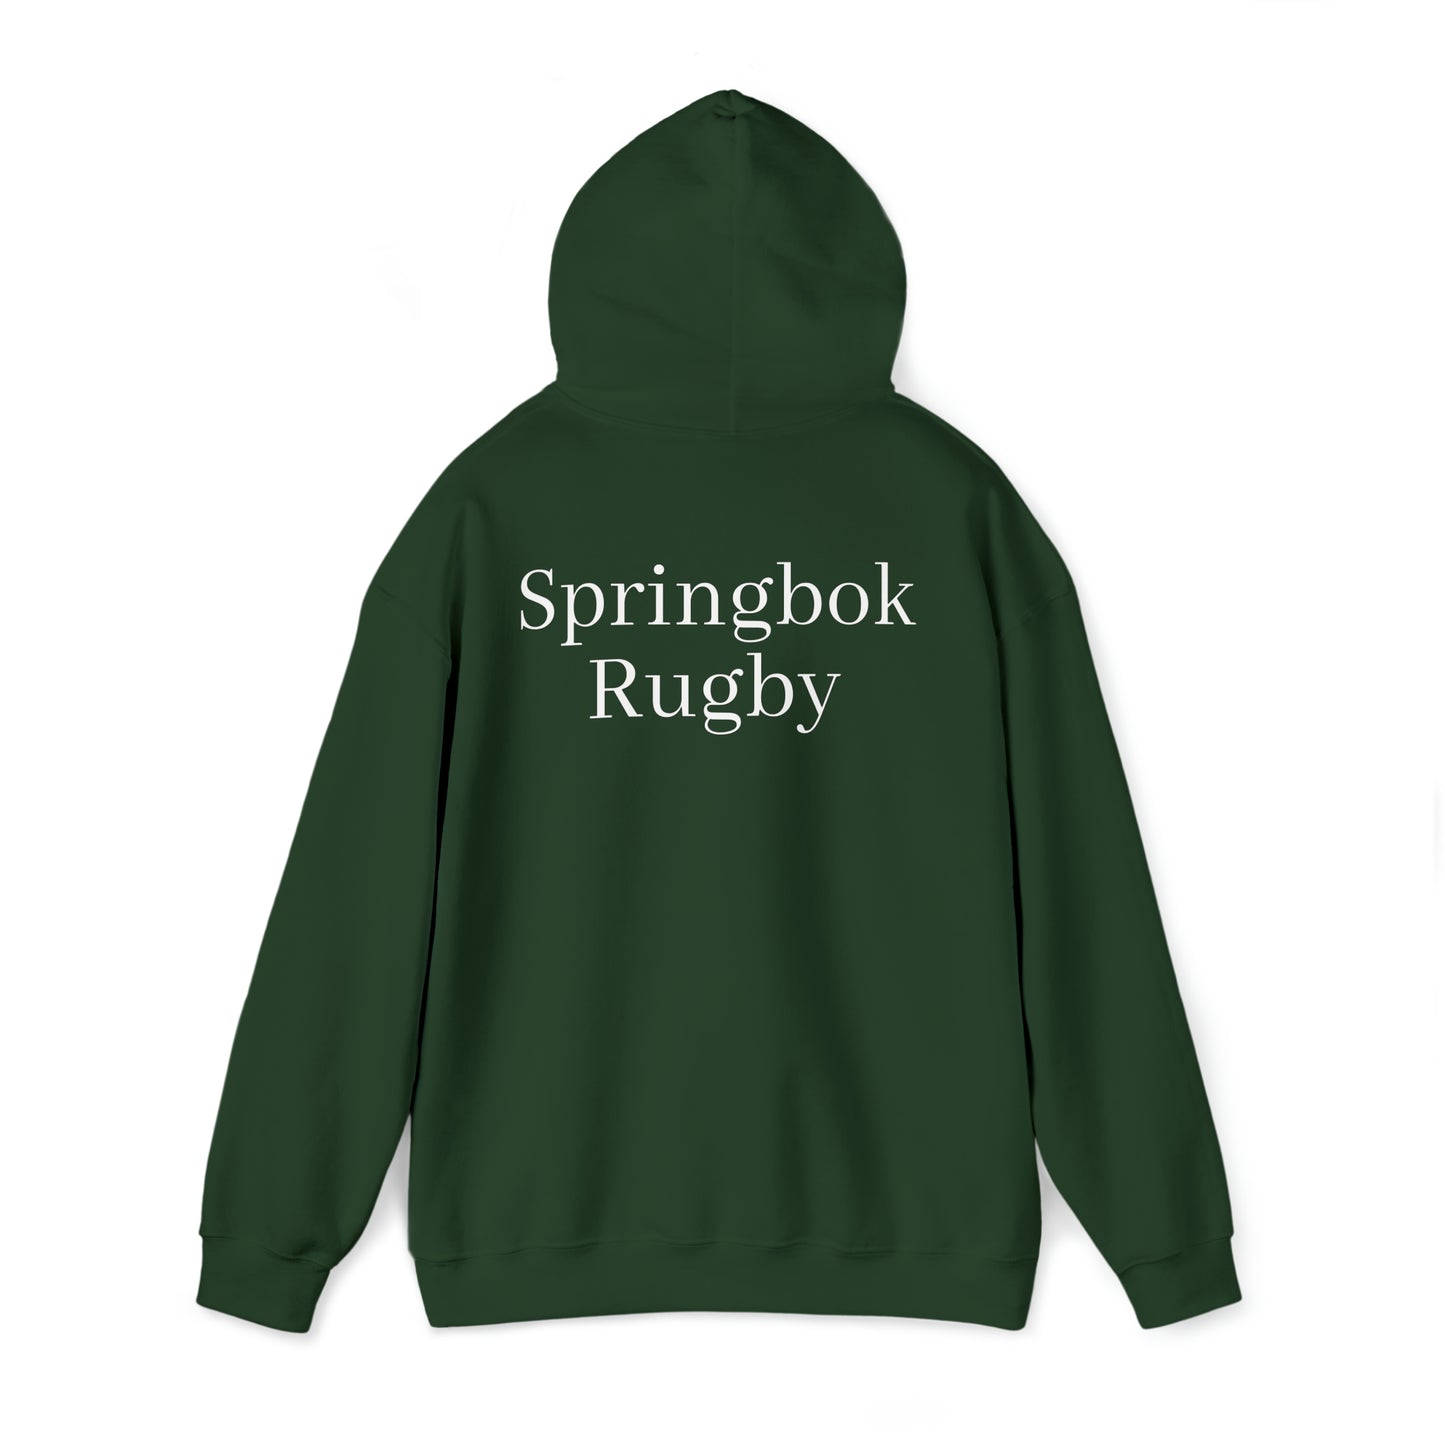 Springboks Celebrating - dark hoodies